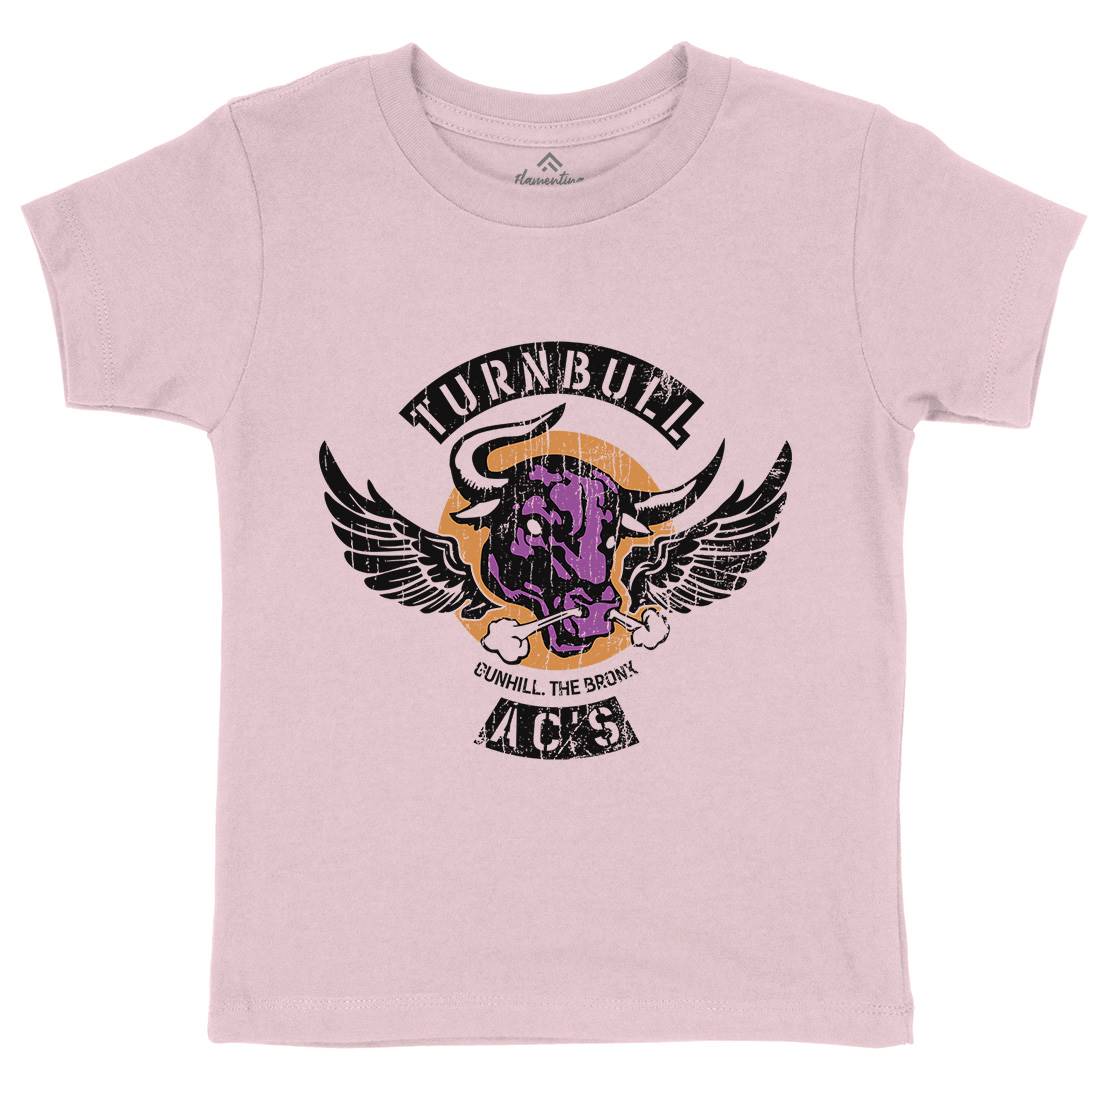 Turnbull Acs Kids Crew Neck T-Shirt Retro D280